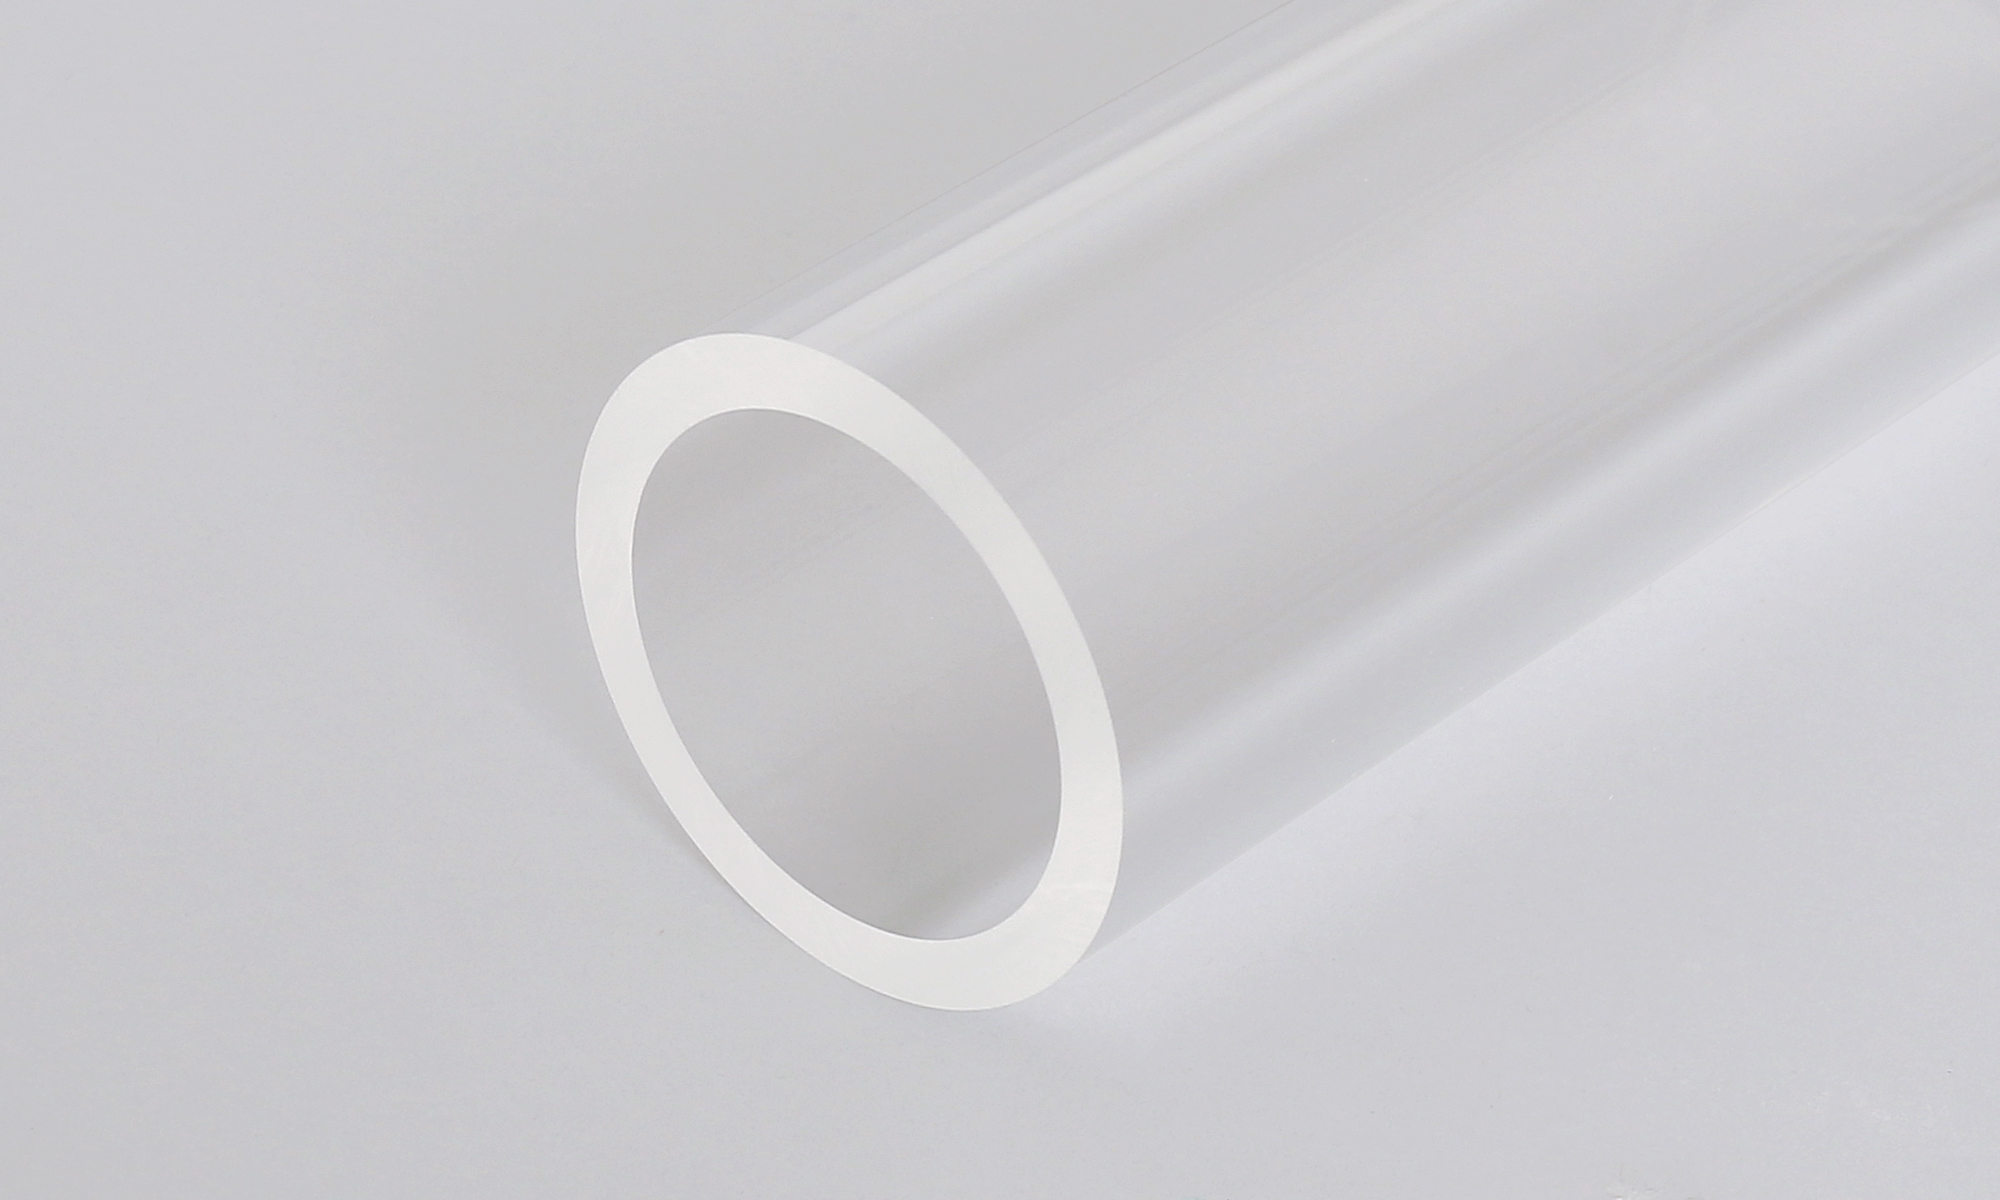 アクリル棒 丸棒 60mm 透明 クリア プラスチック 樹脂 キャスト材料『アクリル丸棒 外径60mm長さ1m(素材のまま)』 - 2